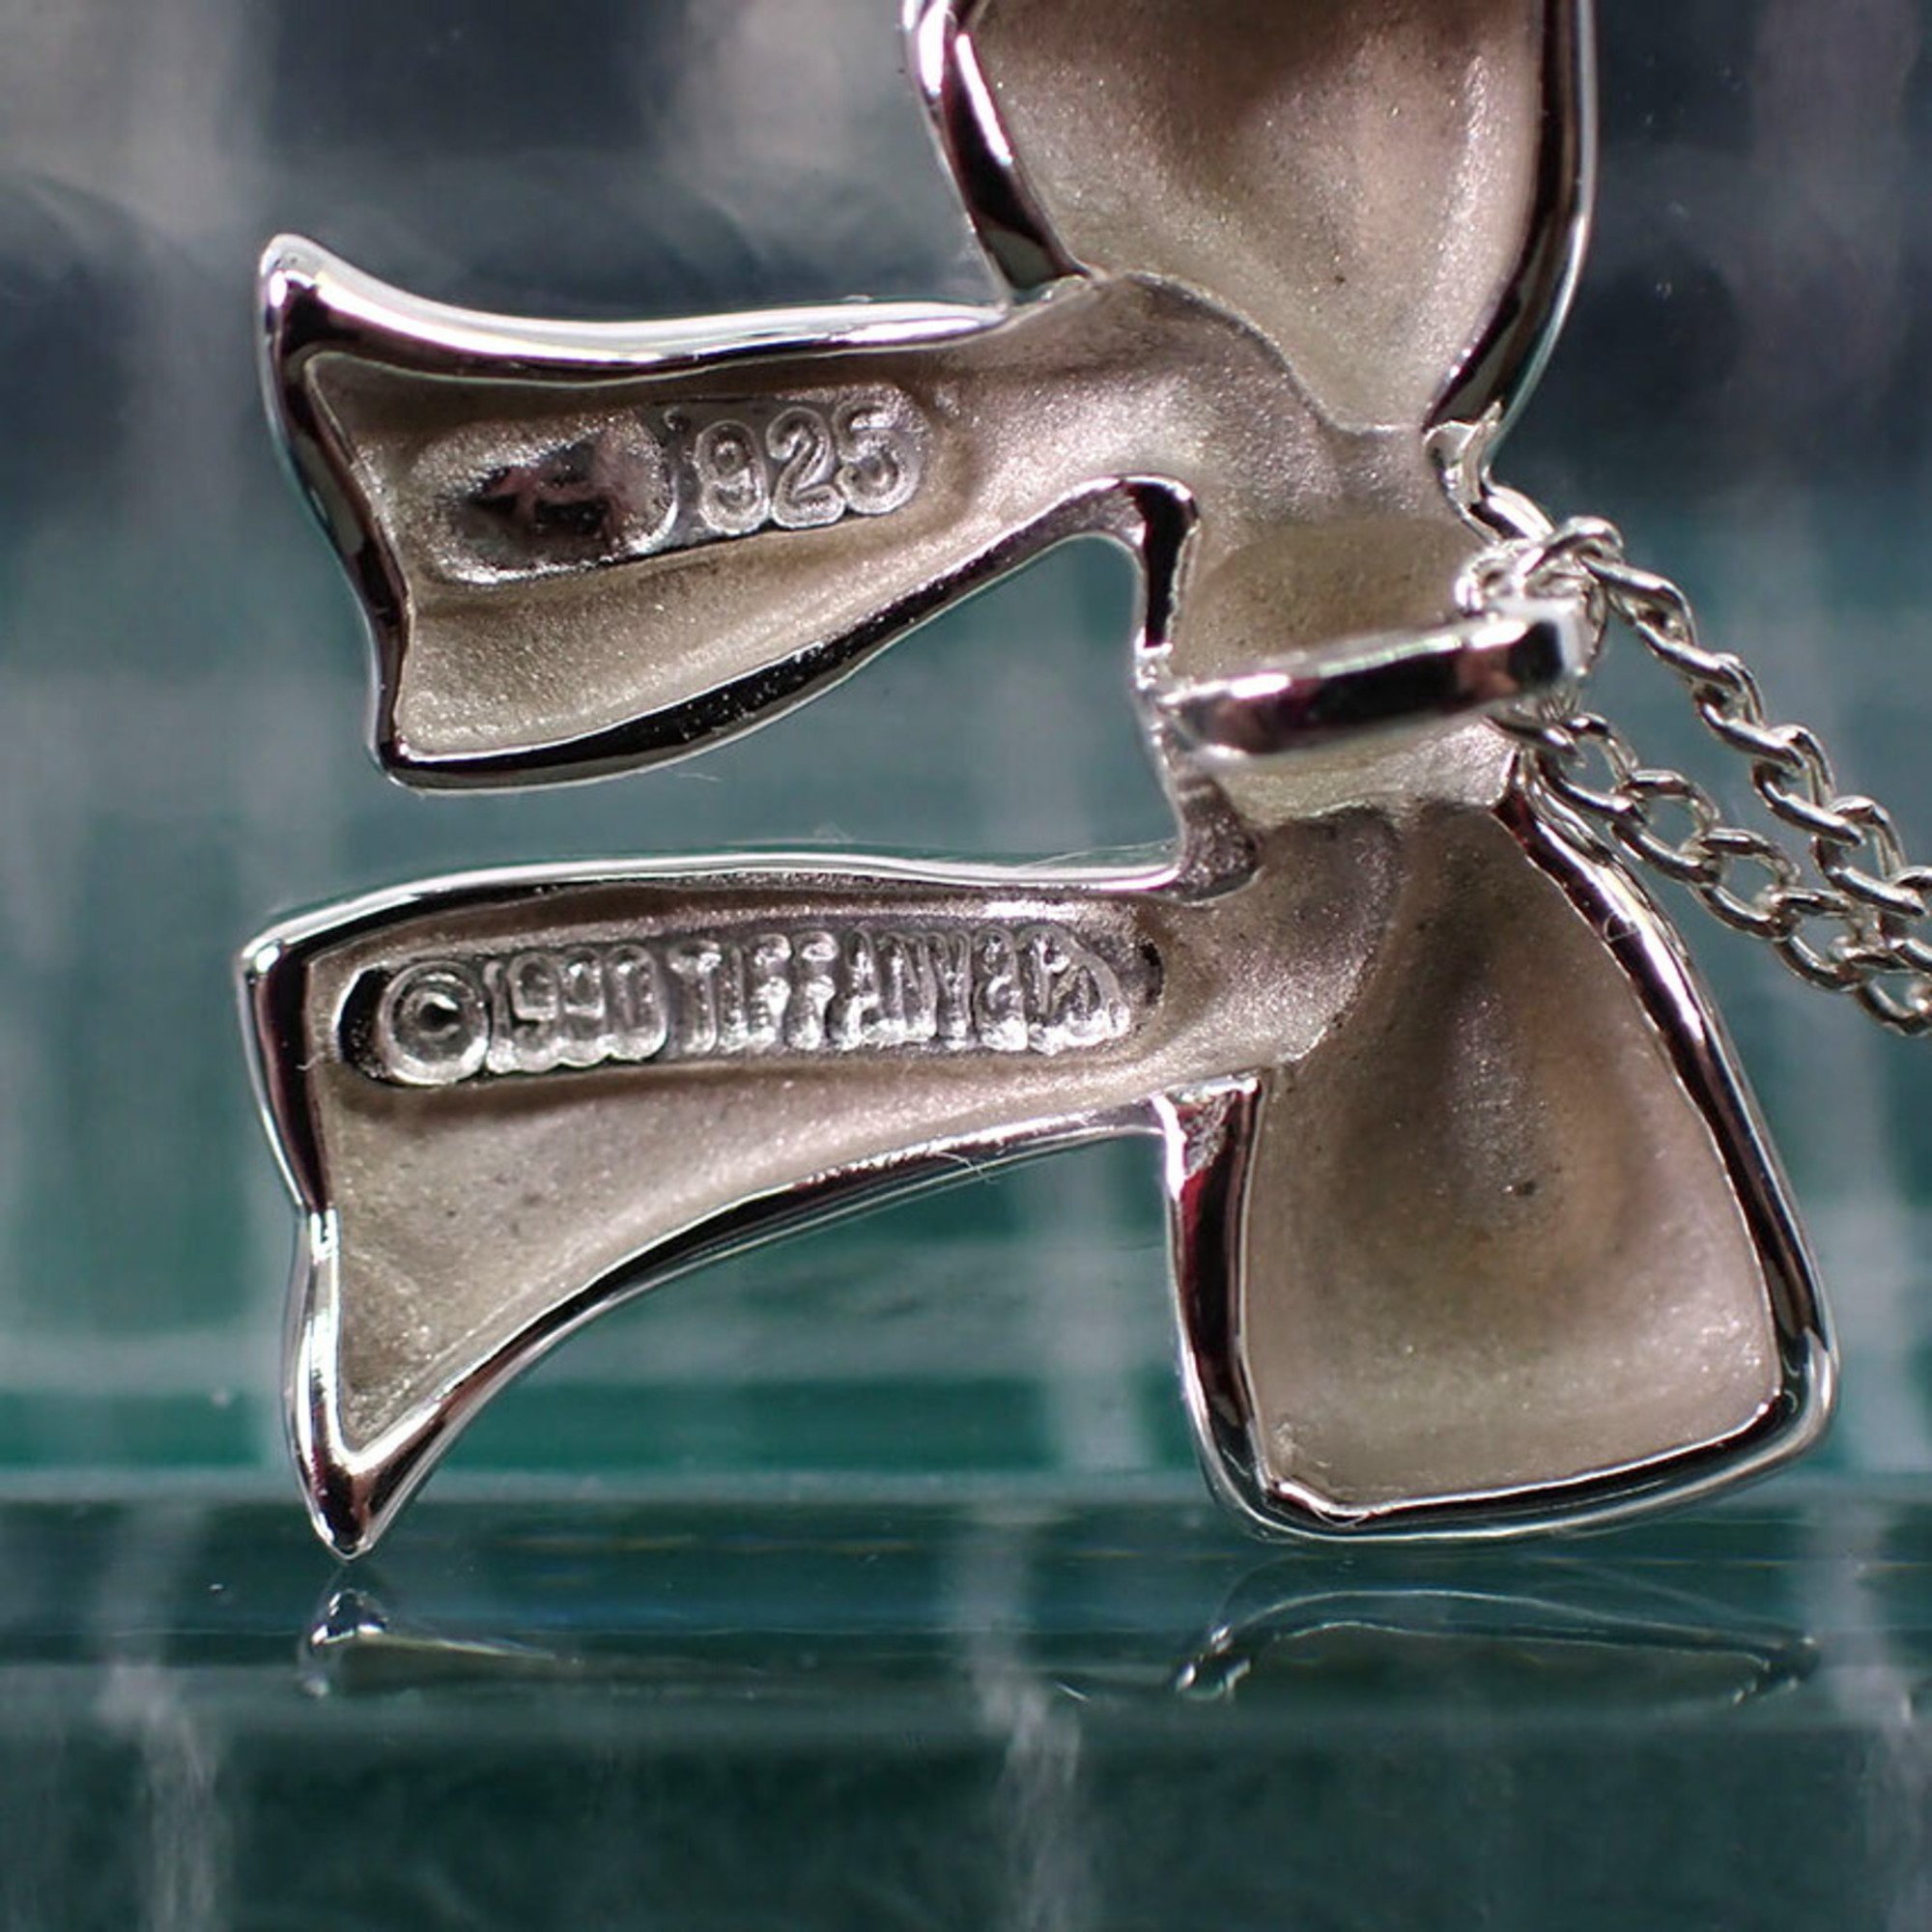 TIFFANY Tiffany 925 ribbon necklace pendant